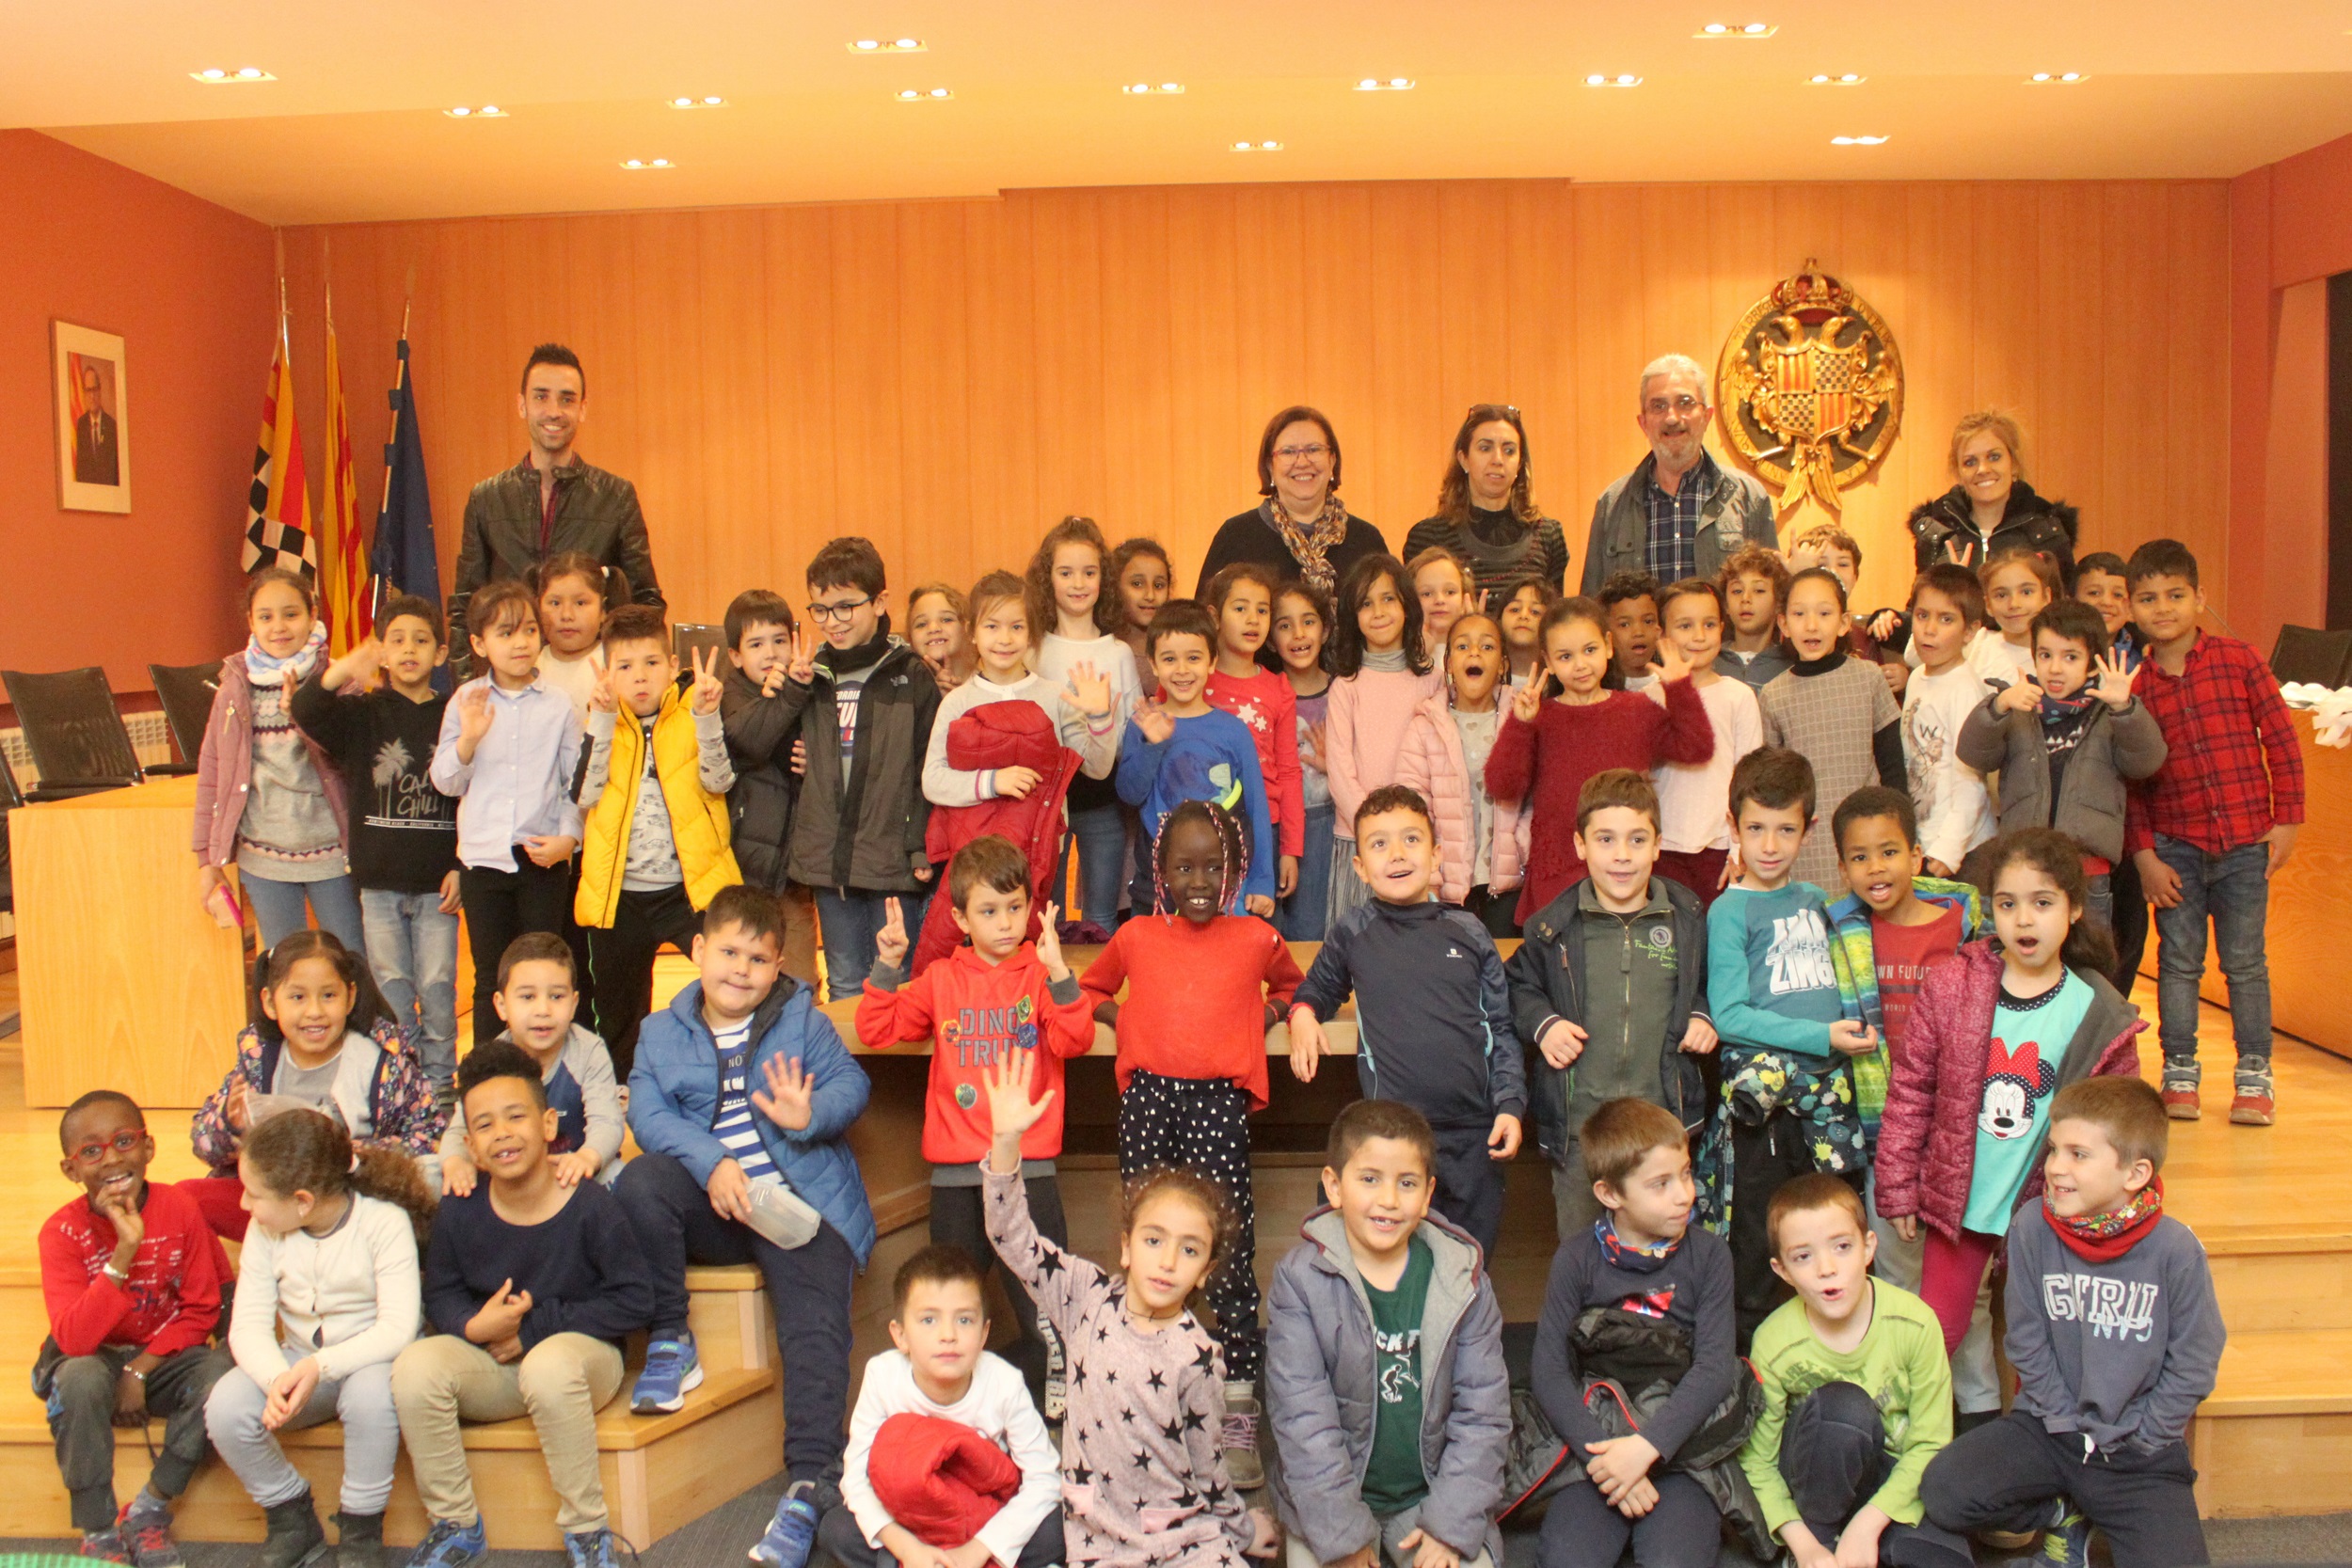 L’Ajuntament de Tàrrega rep la visita d’alumnes del Col•legi Sant Josep – Vedruna de la ciutat